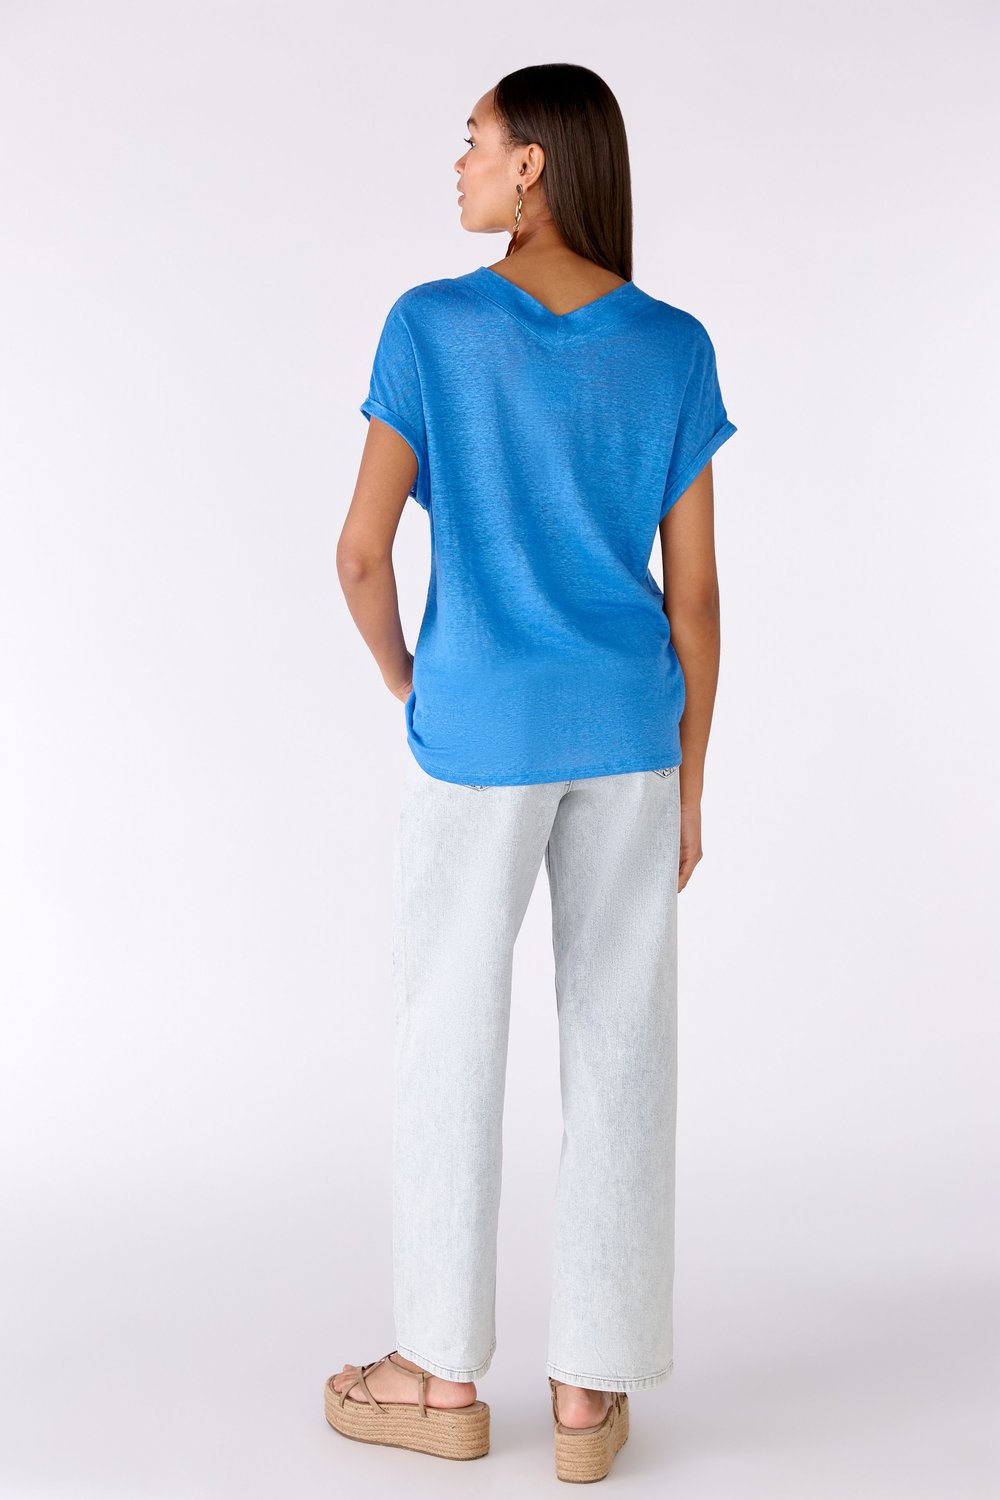 Azure Blue Natural Linen T-Shirt